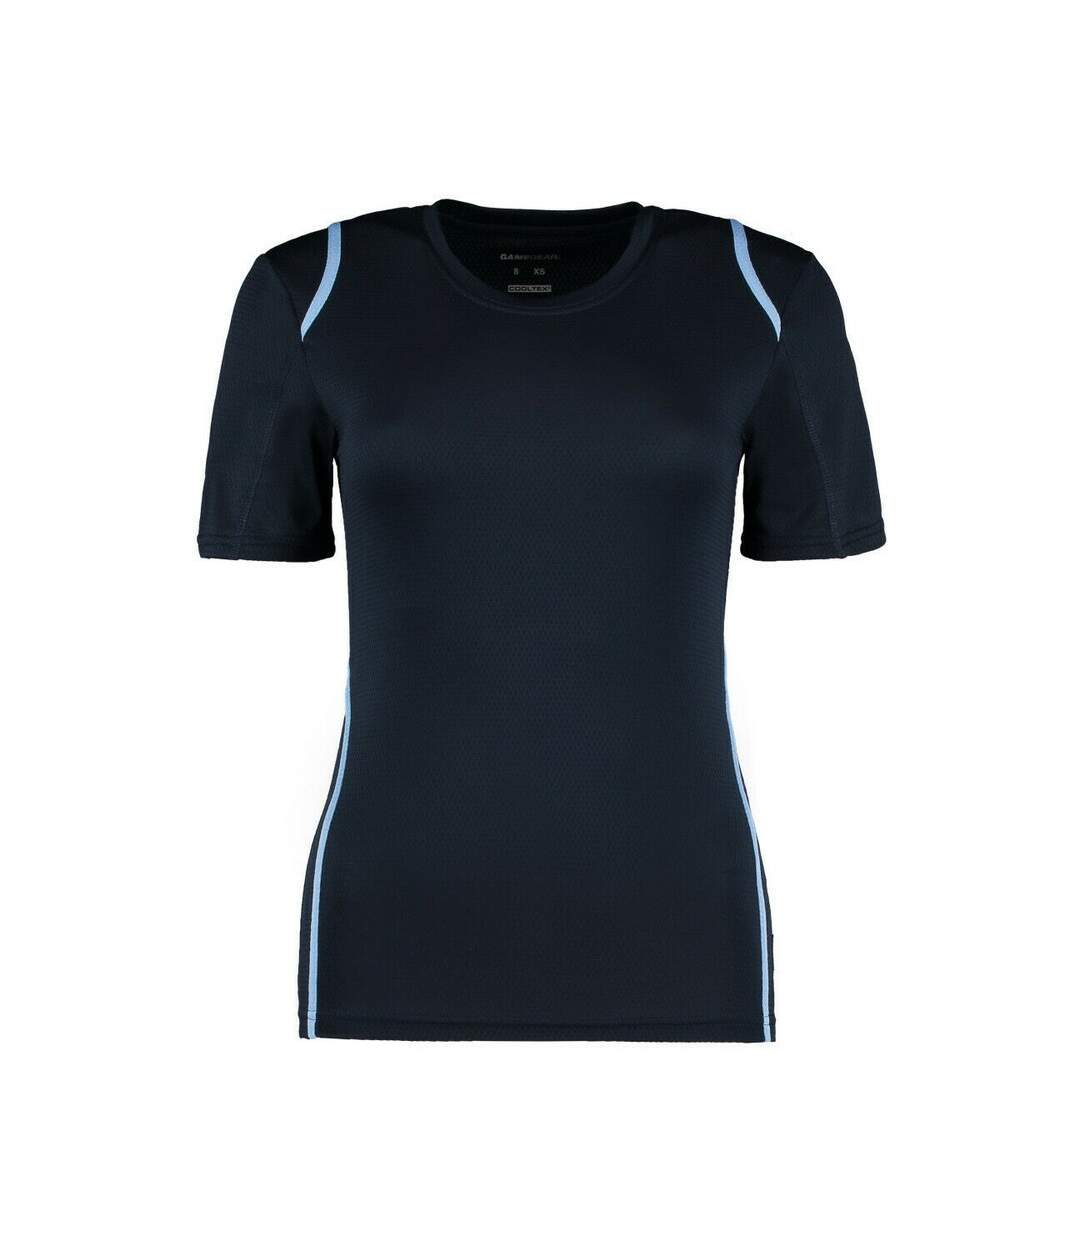 Gamegear Cooltex - T-shirt - Femme (Bleu marine/Bleu clair) - UTBC428